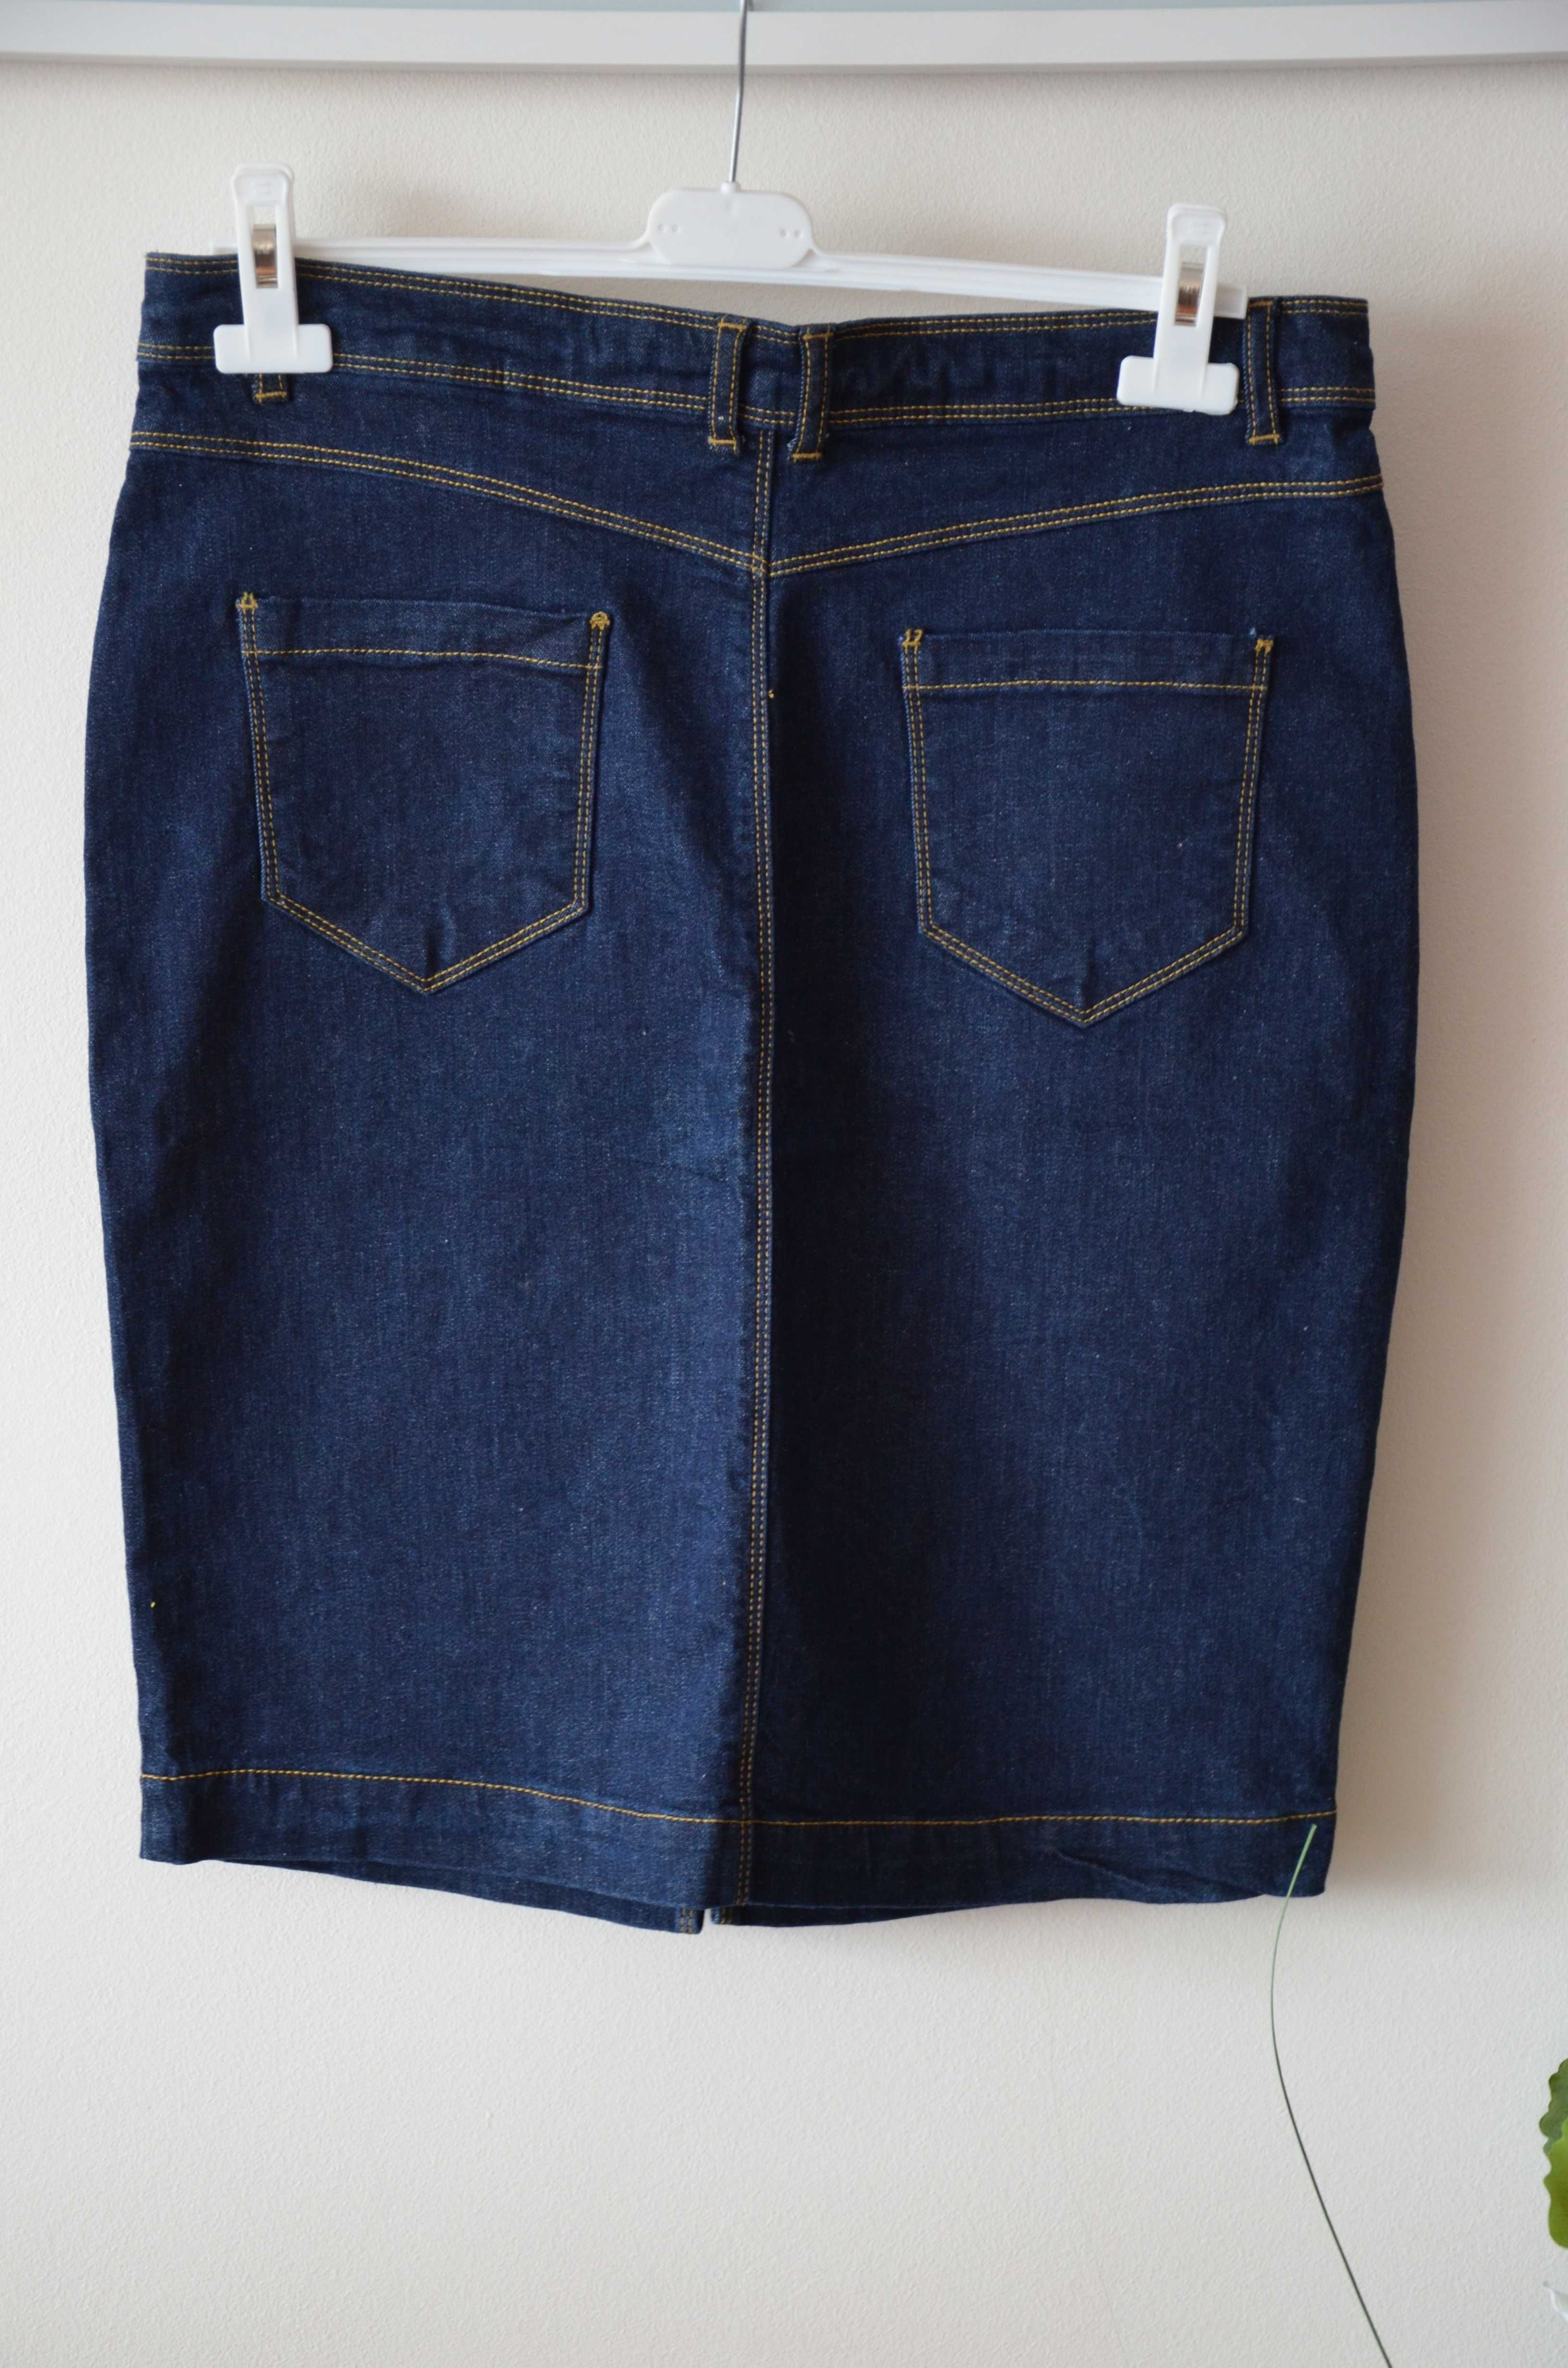 Spódnica jeansowa ołówkowa L greenpoint